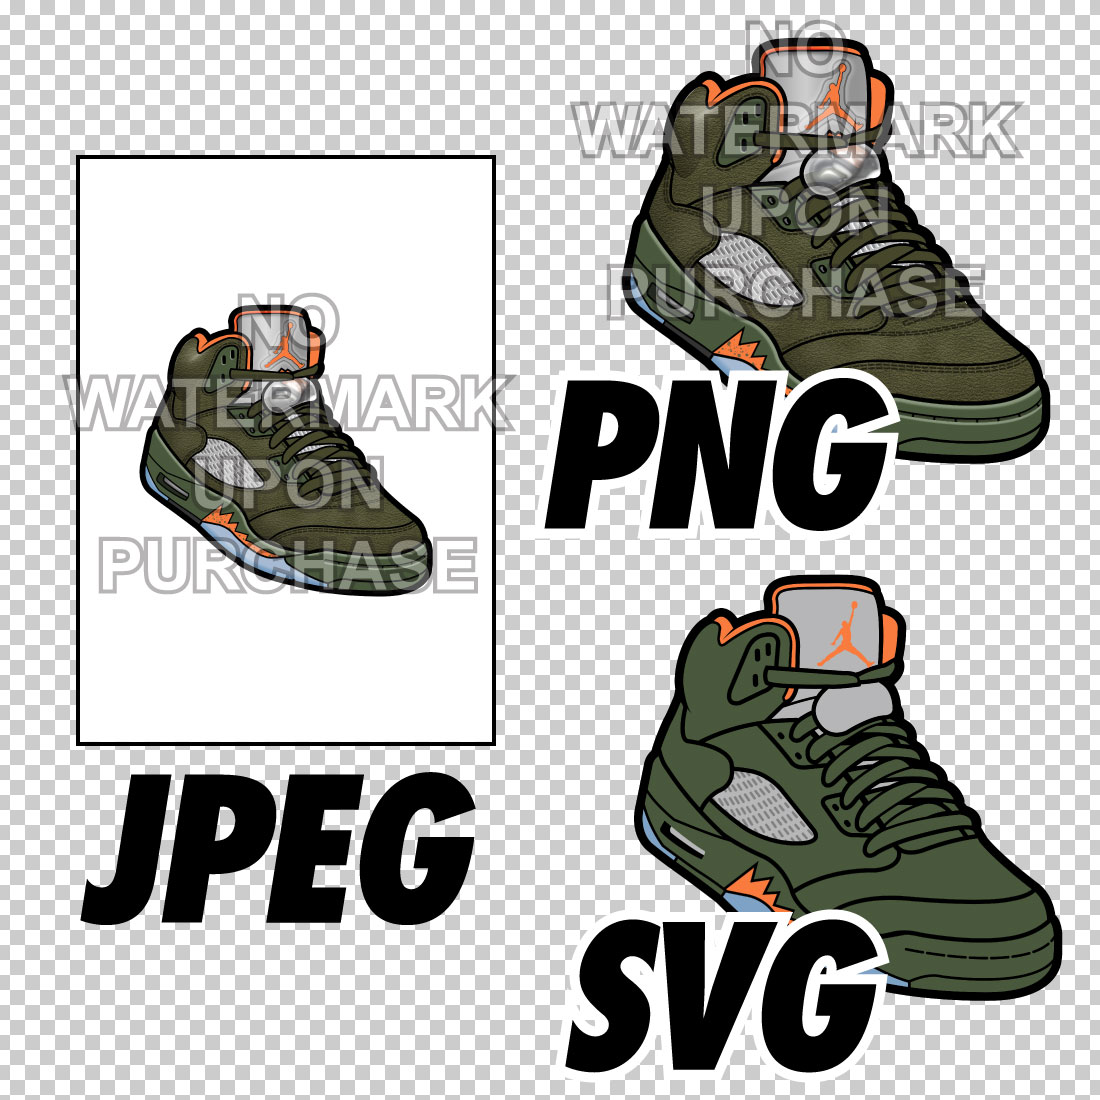 Air Jordan 5 Olive JPEG PNG SVG right & left shoe bundle preview image.